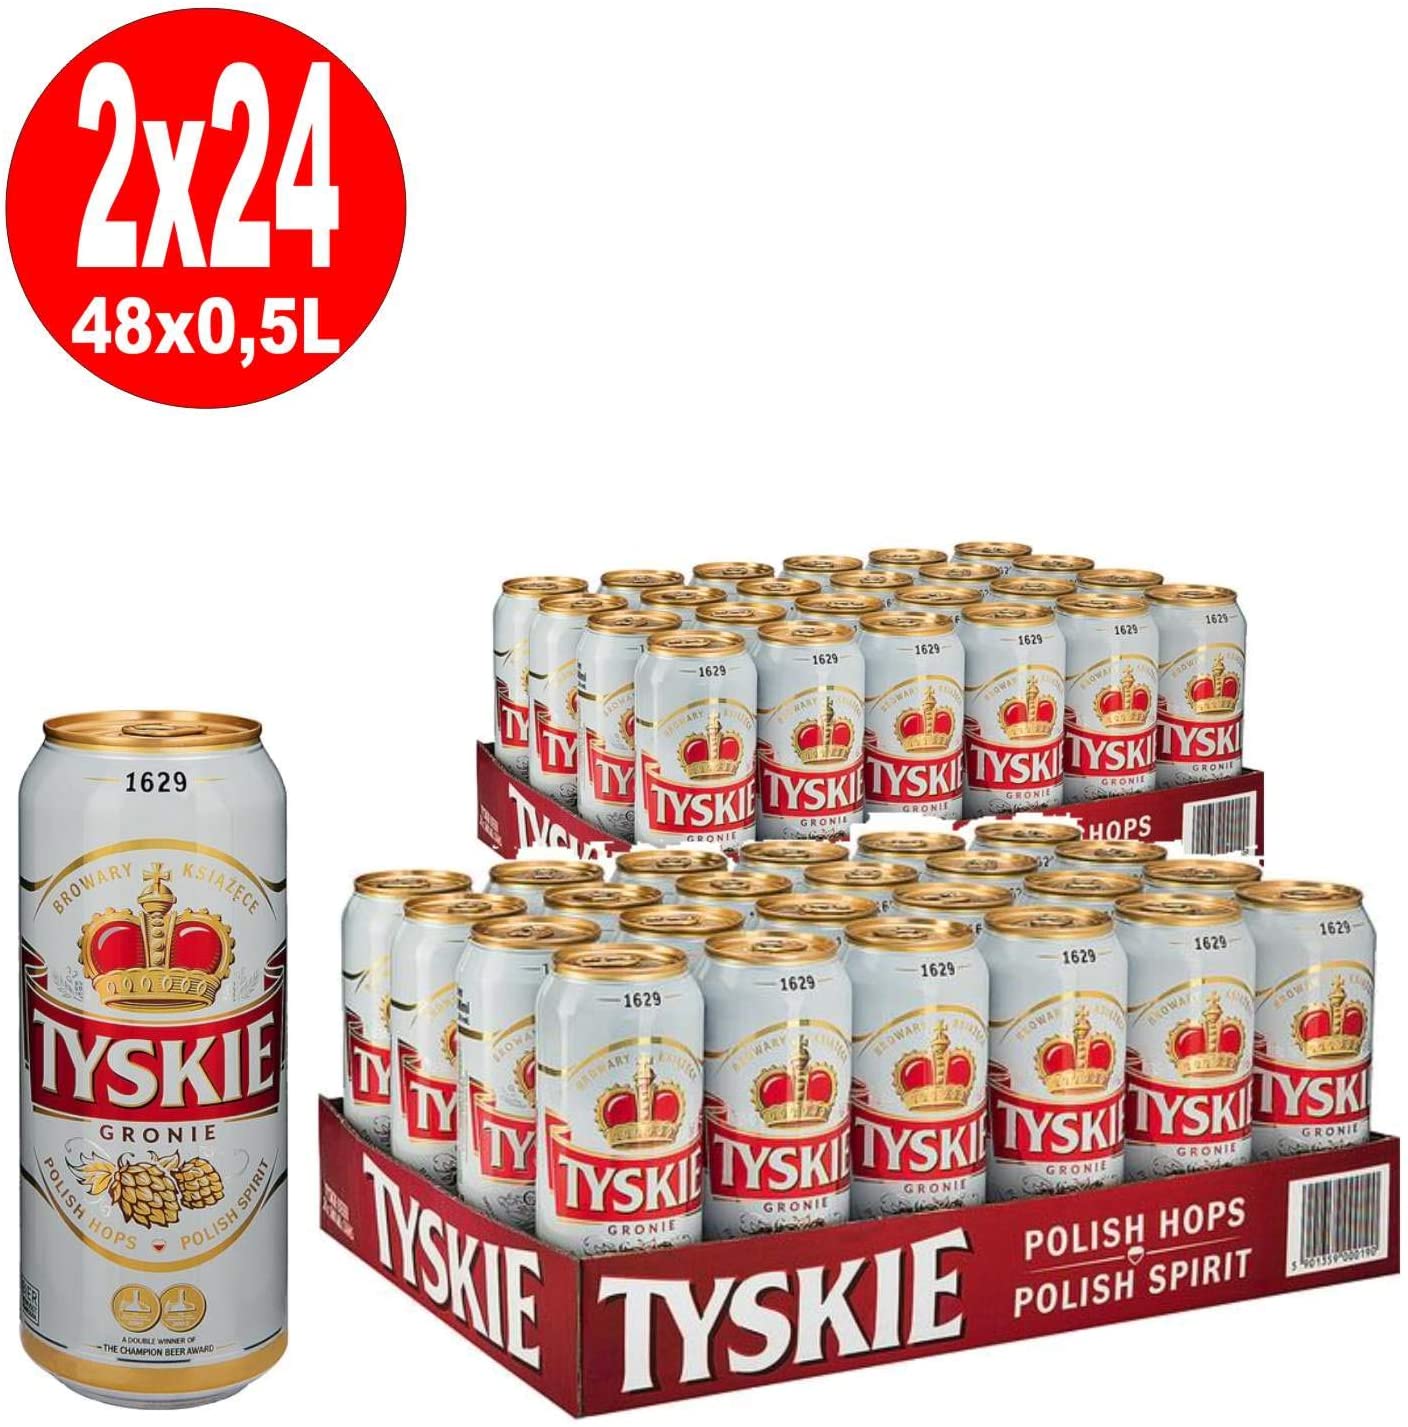 Tyskie Gronie 0,5l - Polnisches Lager im Pilsner Stil mit 5,2% Vol. in der Dose